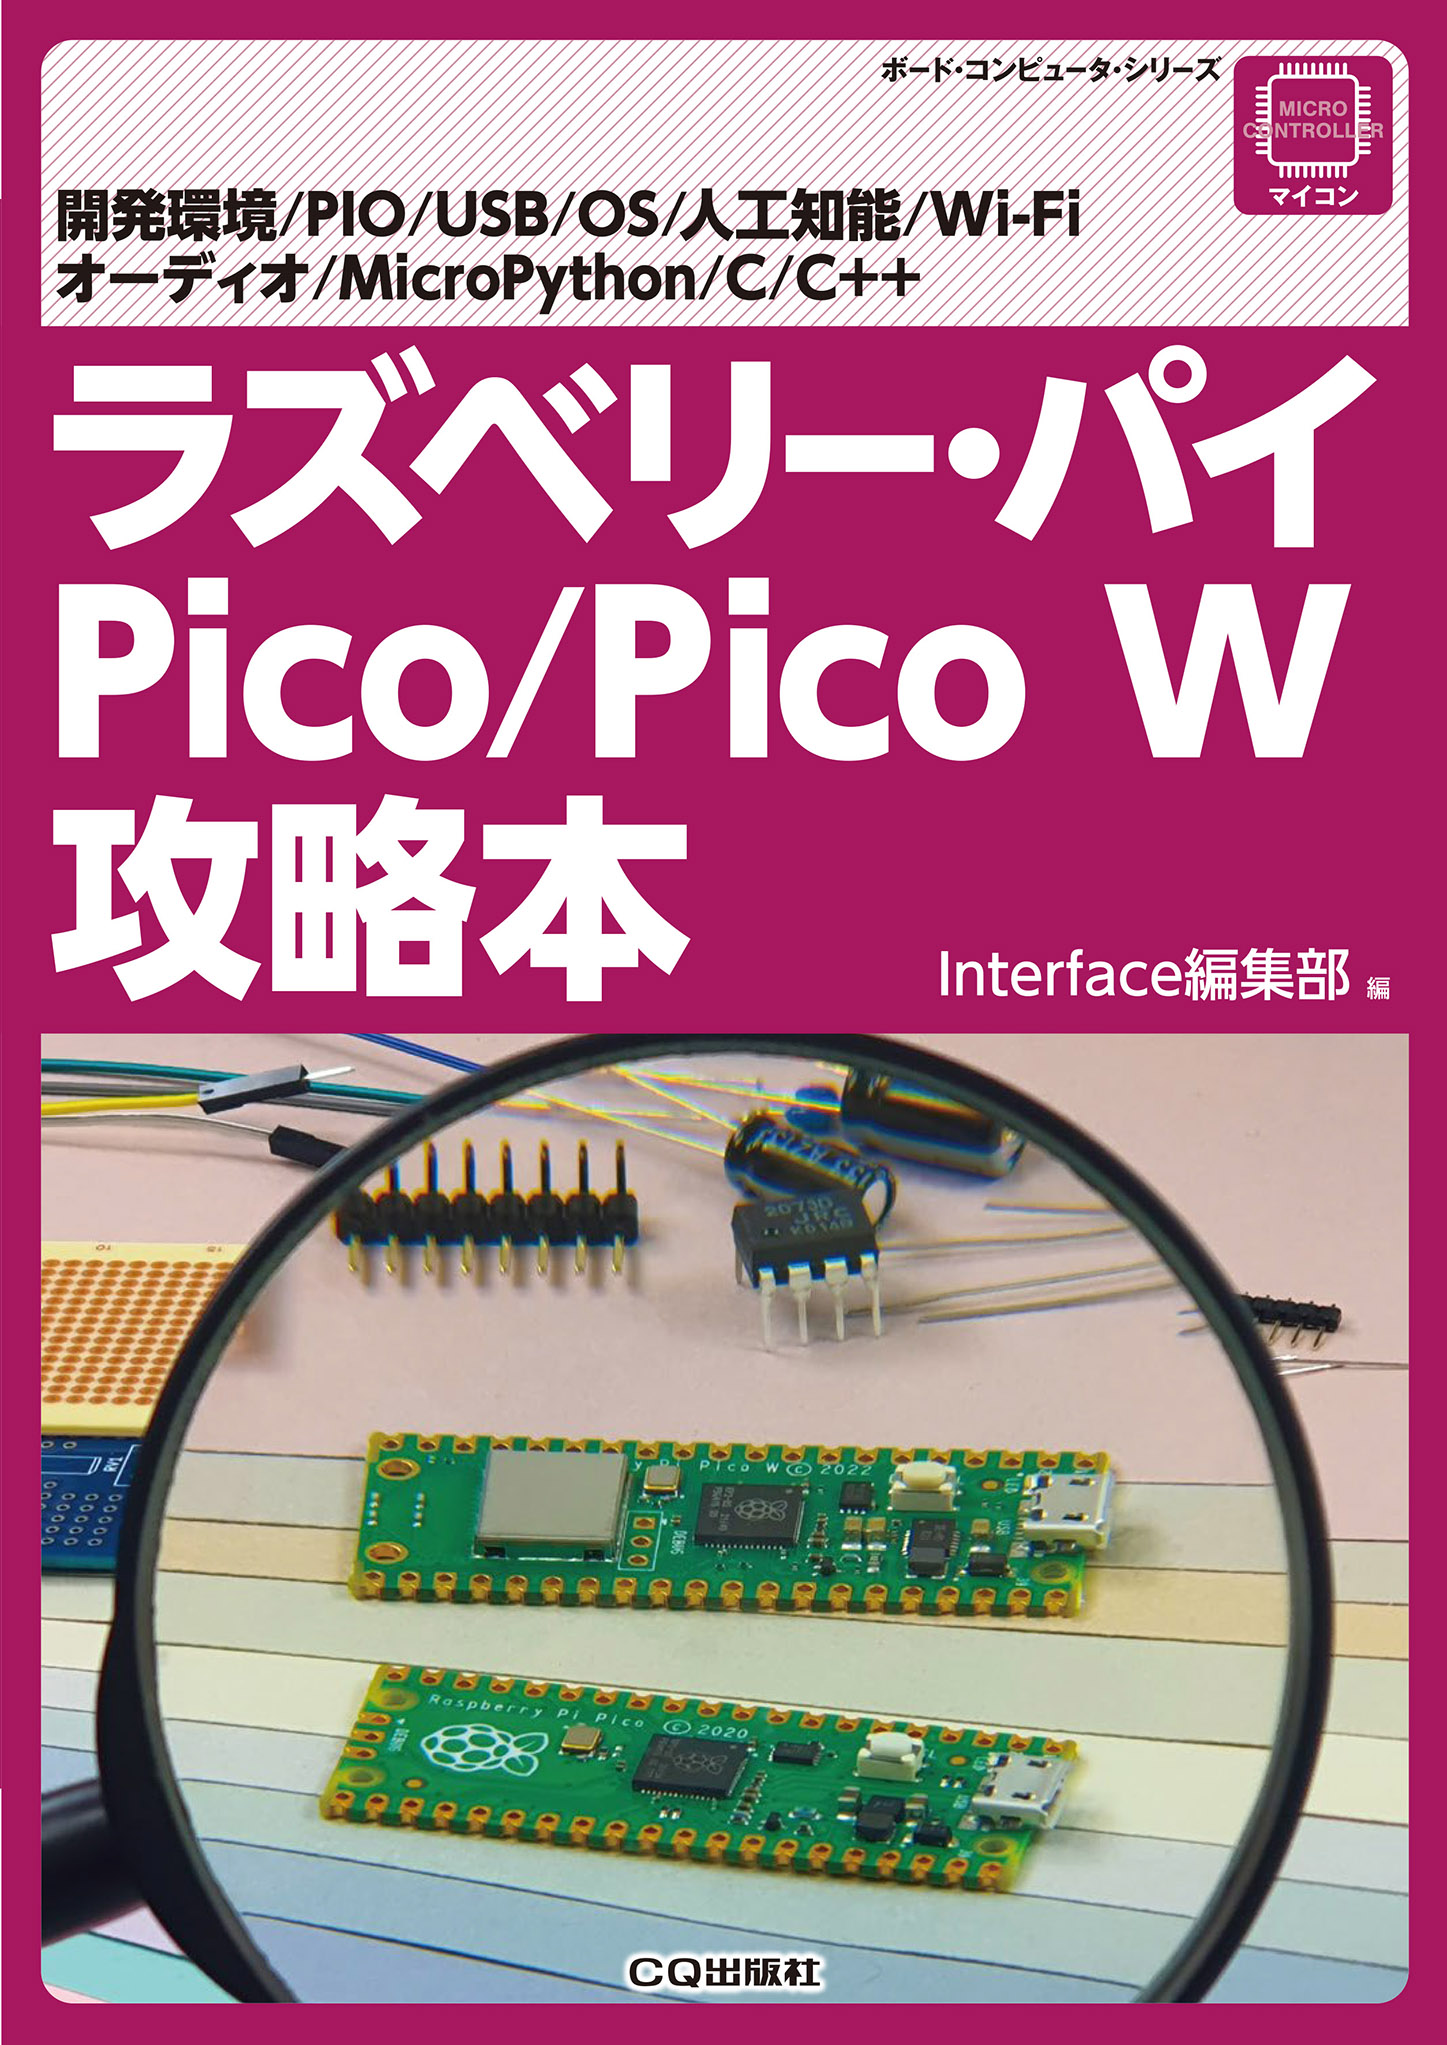 ラズベリー・パイ Pico/Pico W攻略本の商品画像